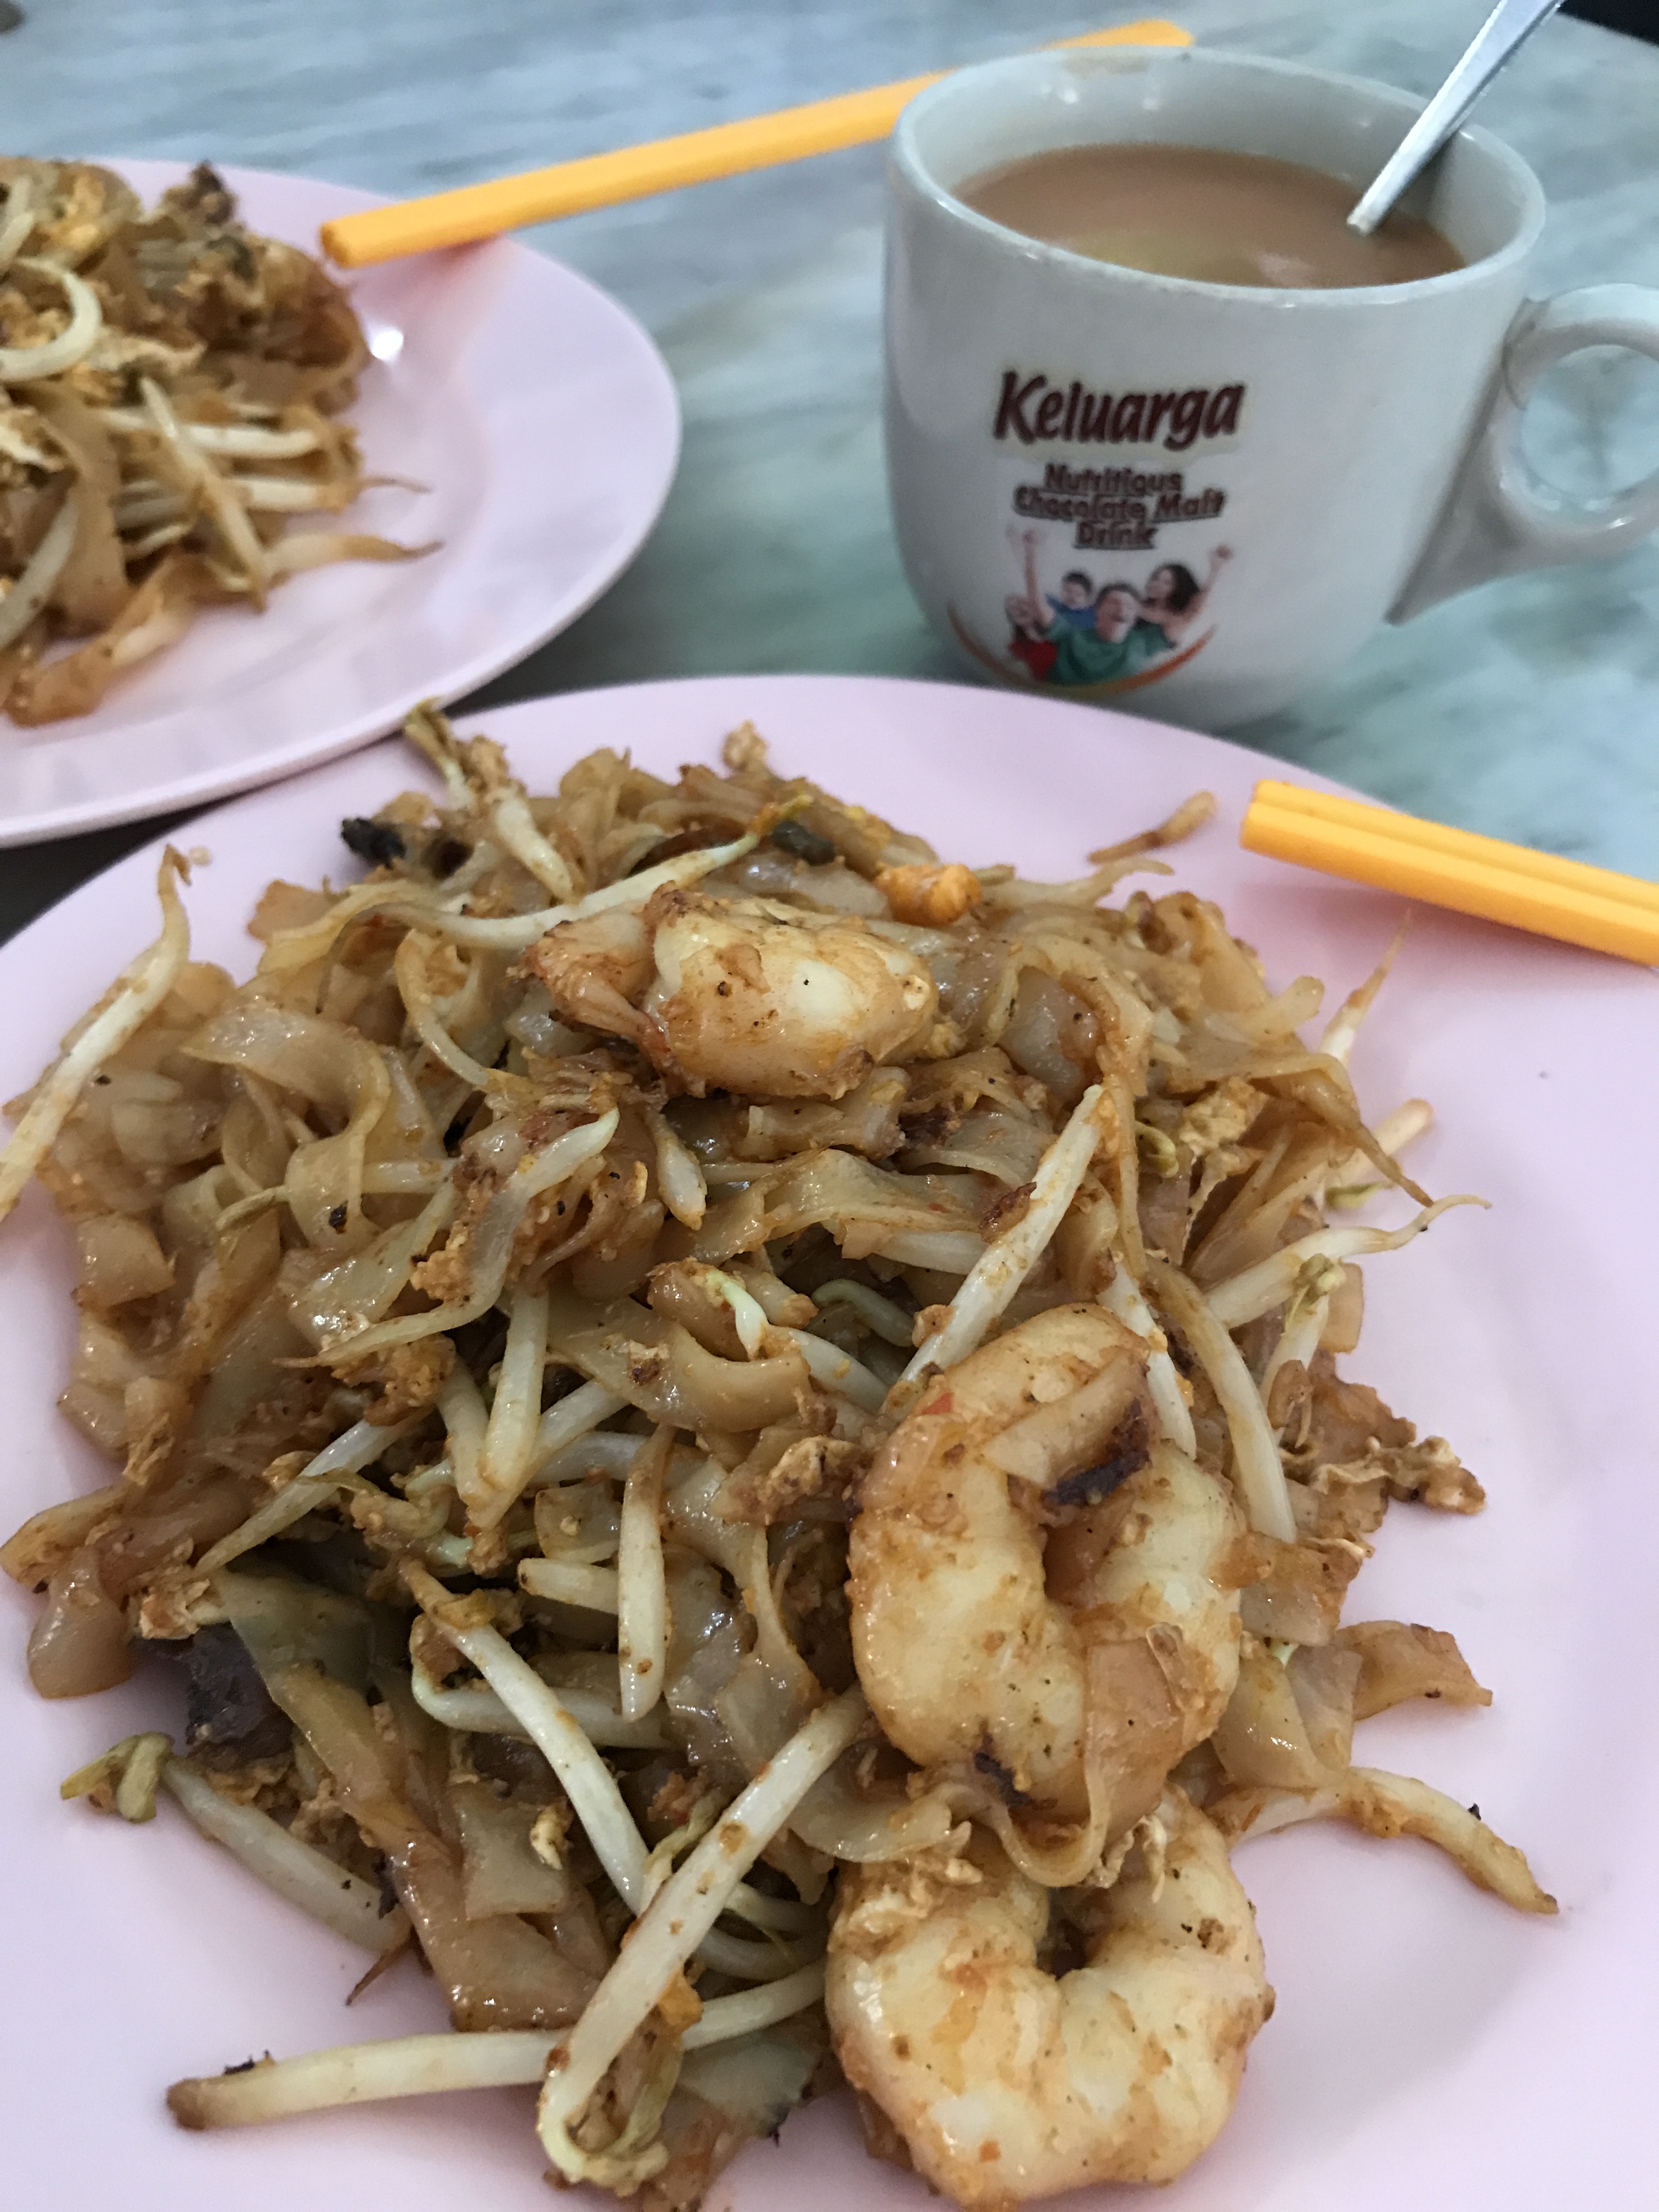 Penang, Food and more Food! (27 – 29 Jun 2017) | twliveslifeonce